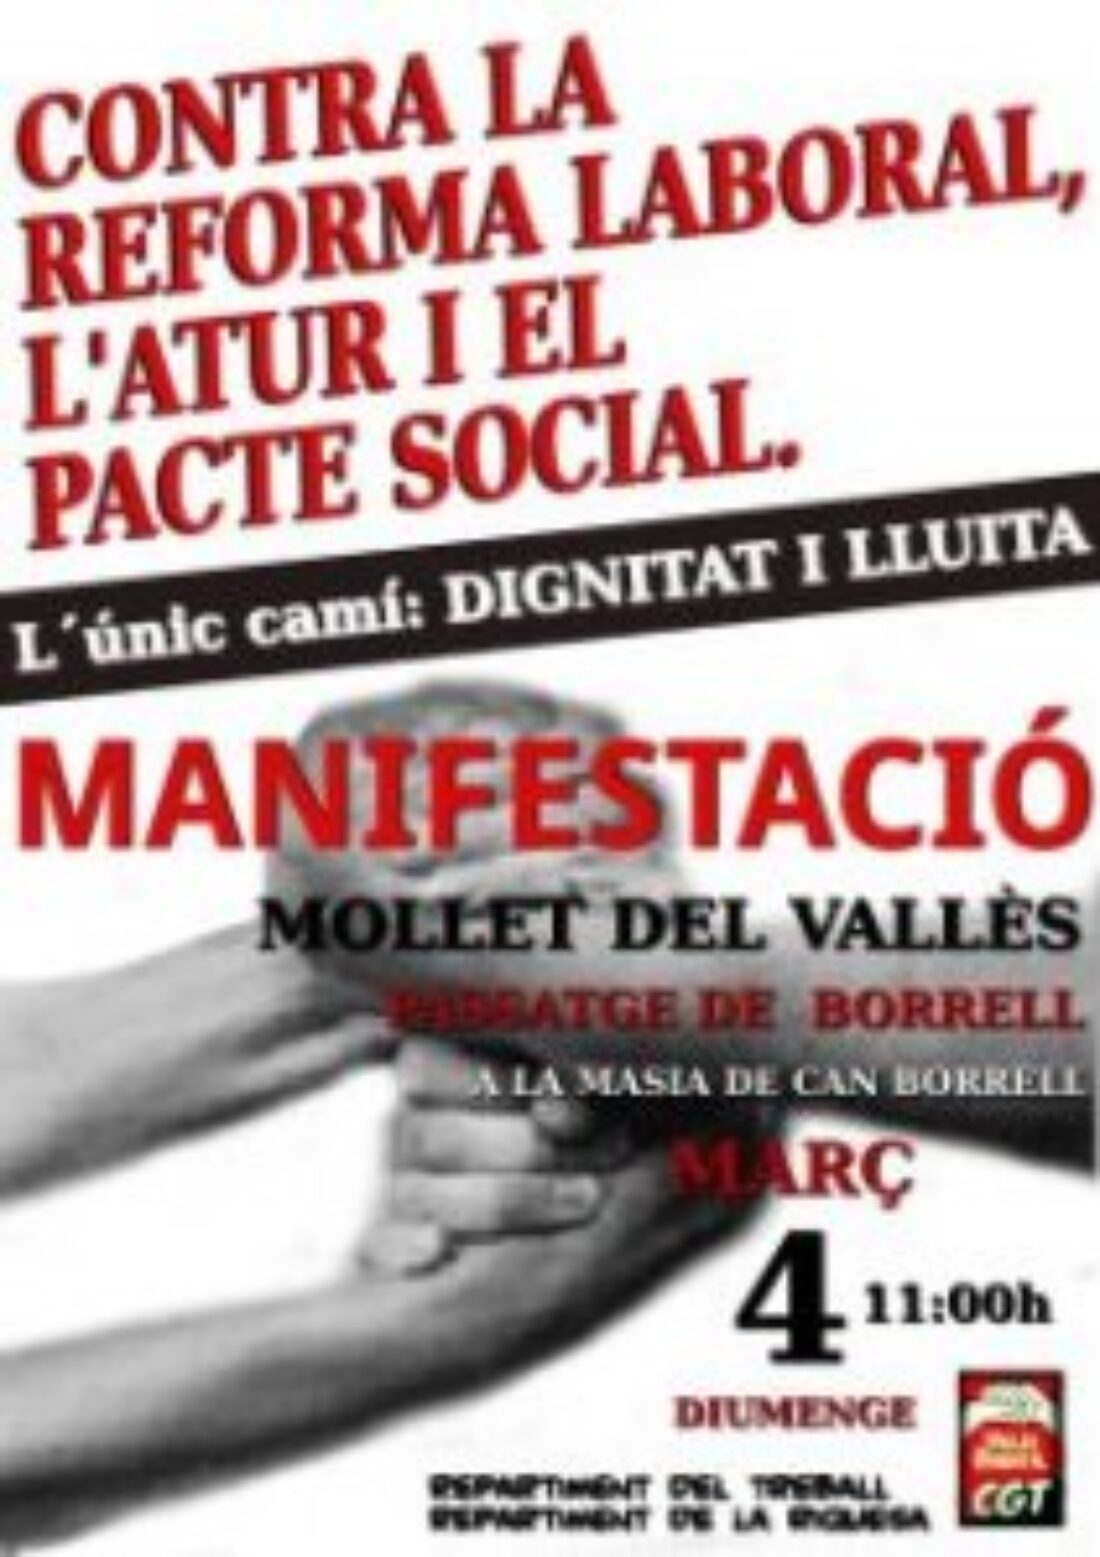 Mollet del Vallès: Manifestación contra la reforma laboral, el desempleo y el pacto social